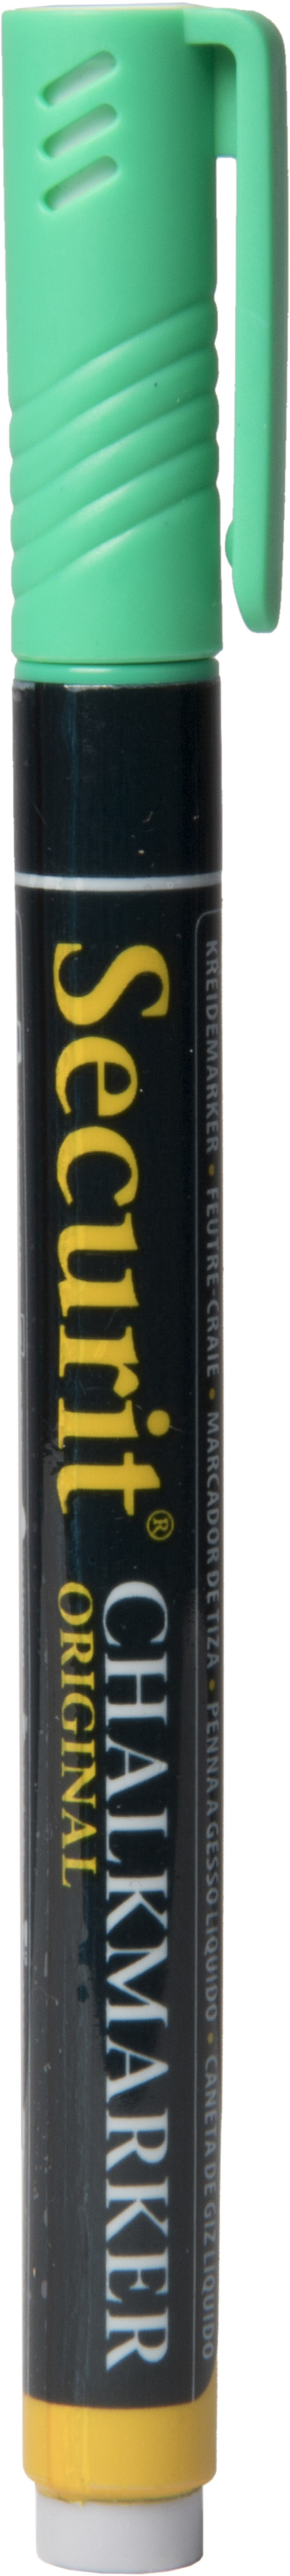 SECURIT Marker Craie 1-2mm SMA100-GR vert